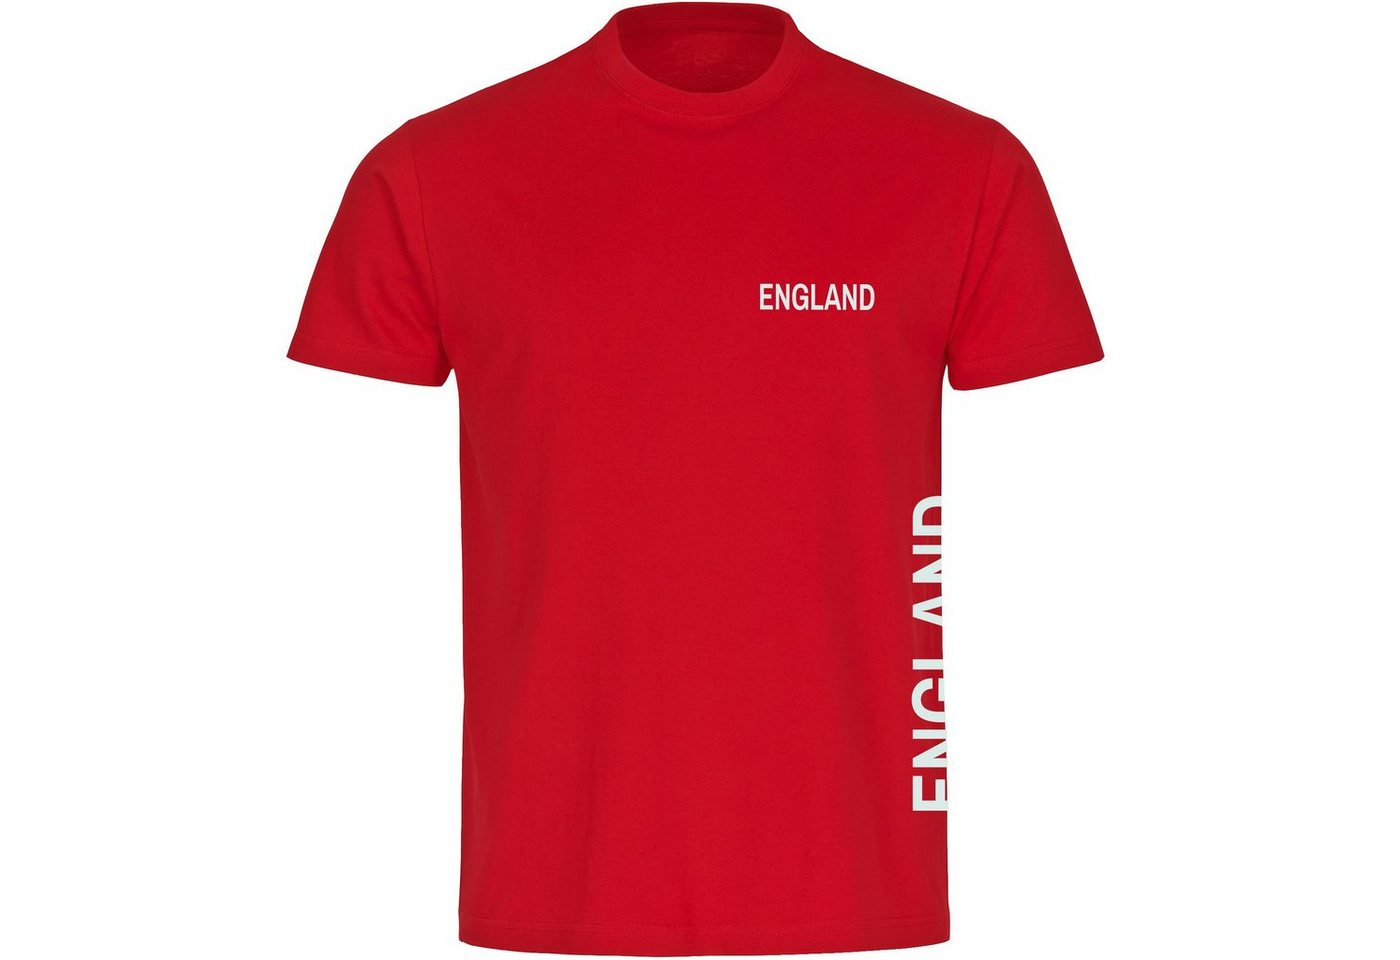 multifanshop T-Shirt Herren England - Brust & Seite - Männer von multifanshop